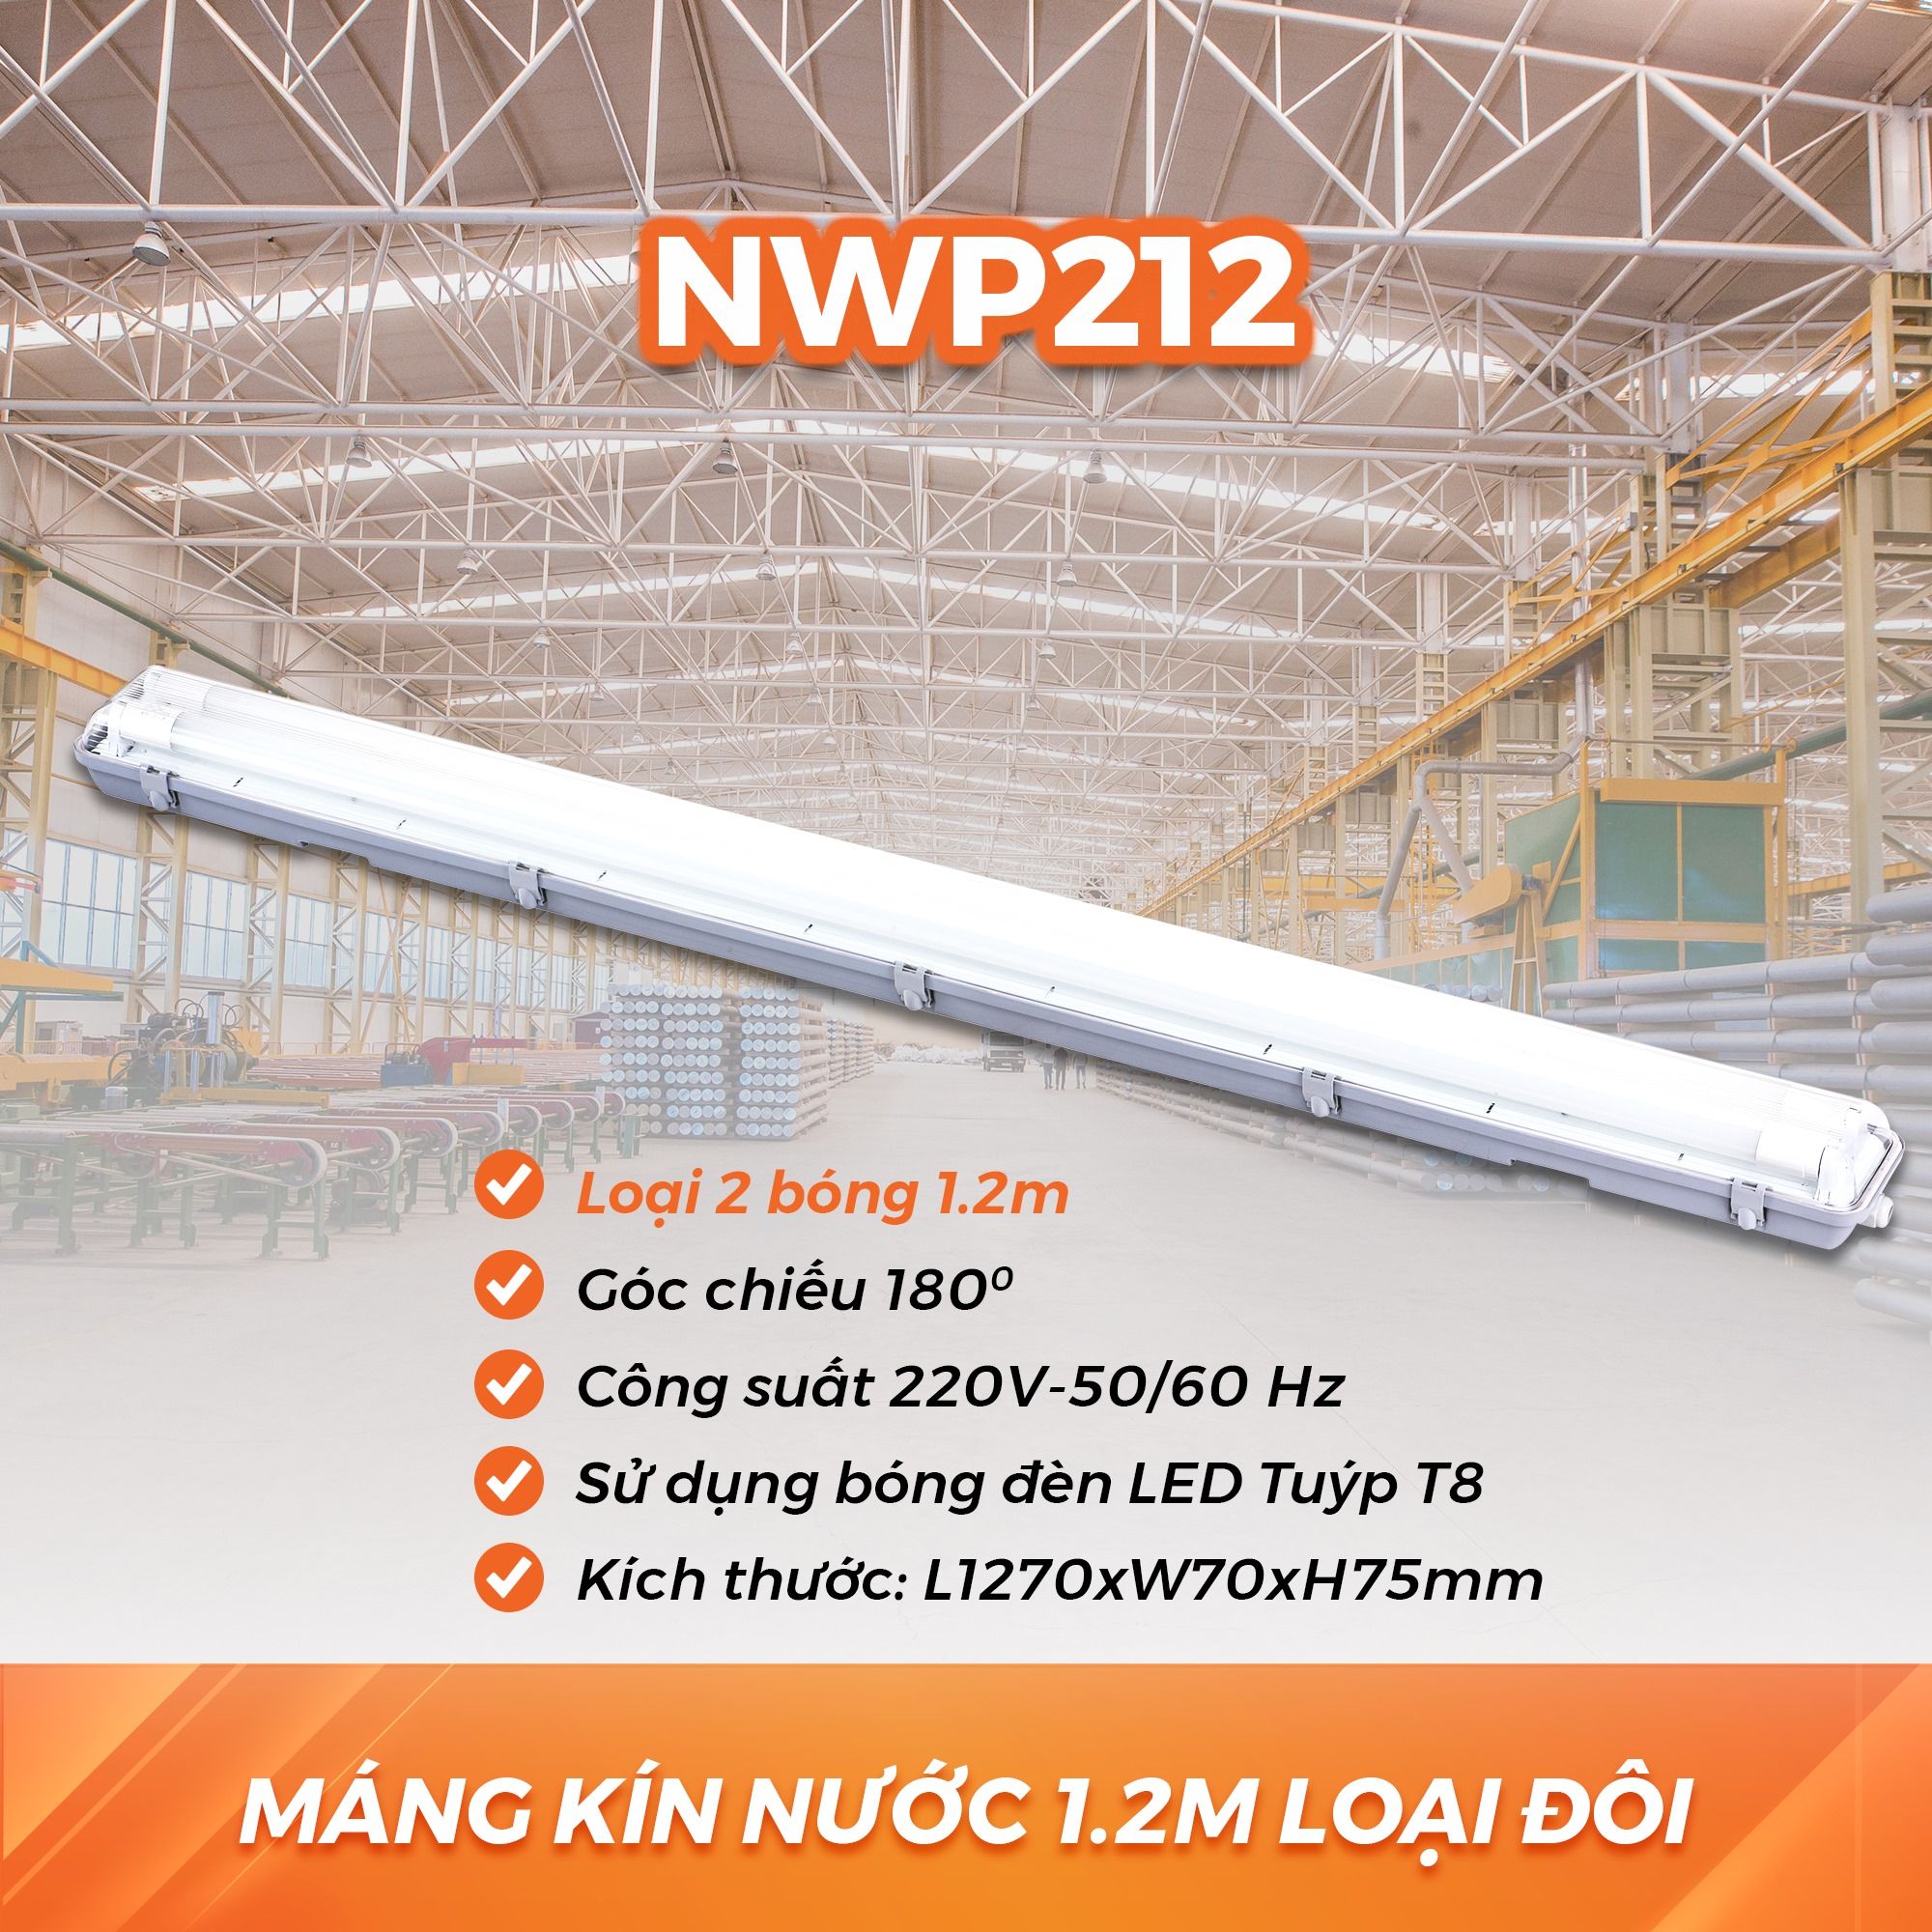  Máng Đèn LED Kín Nước Nanoco - Loại Đôi Dài 1.2m NWP212 